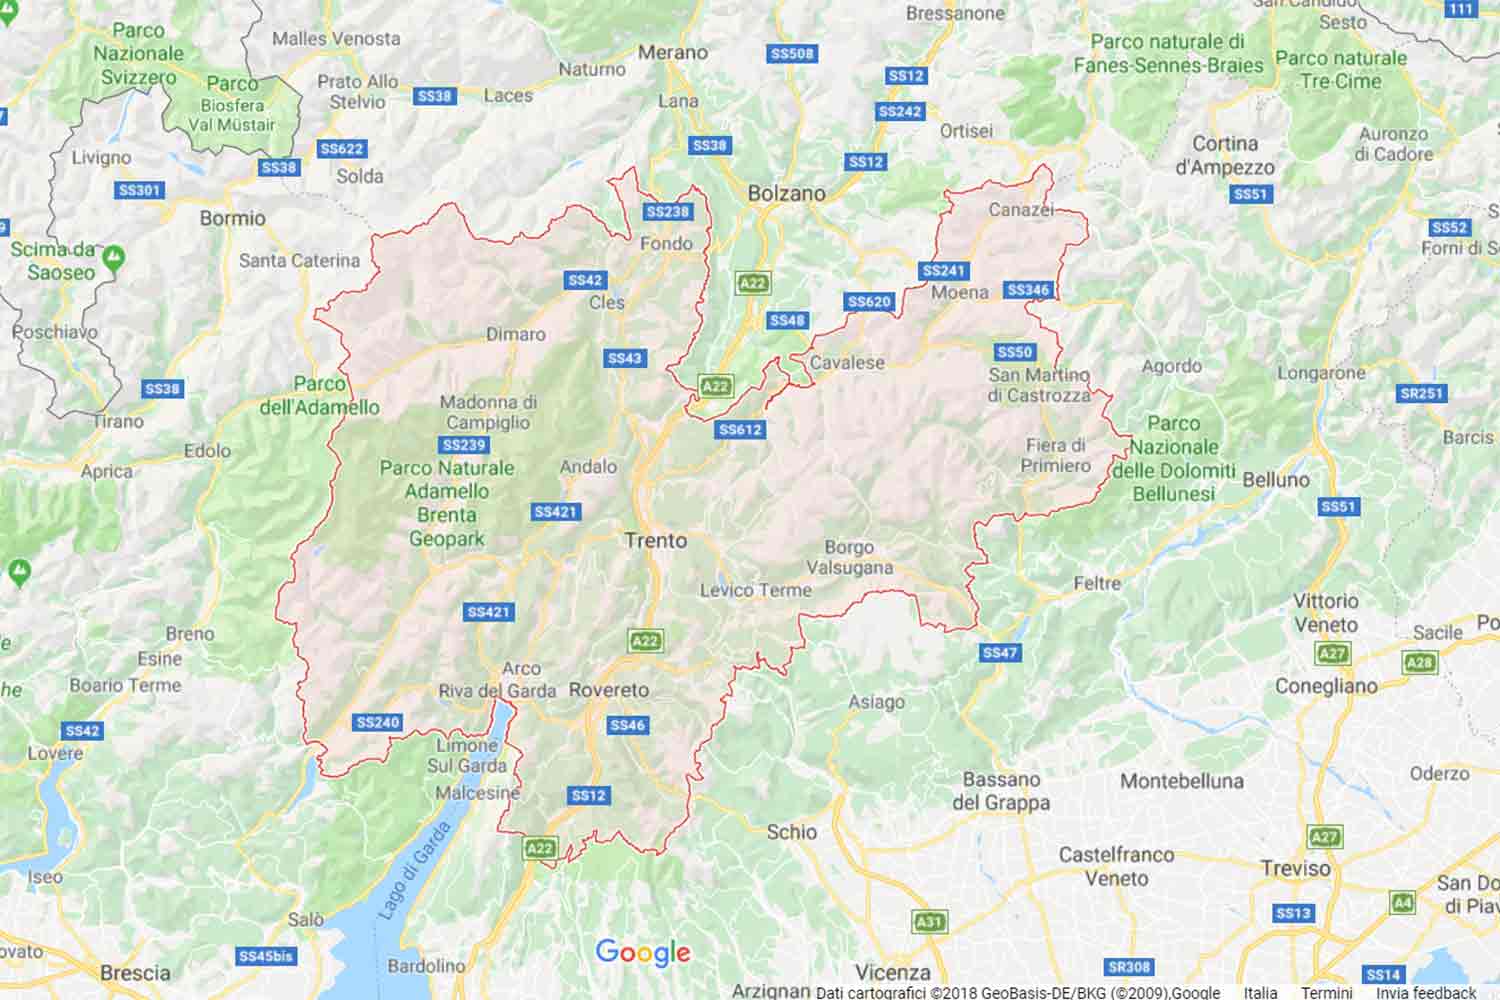 Trentino - Trento - Altopiano della Vigolana Preventivi Veloci google maps